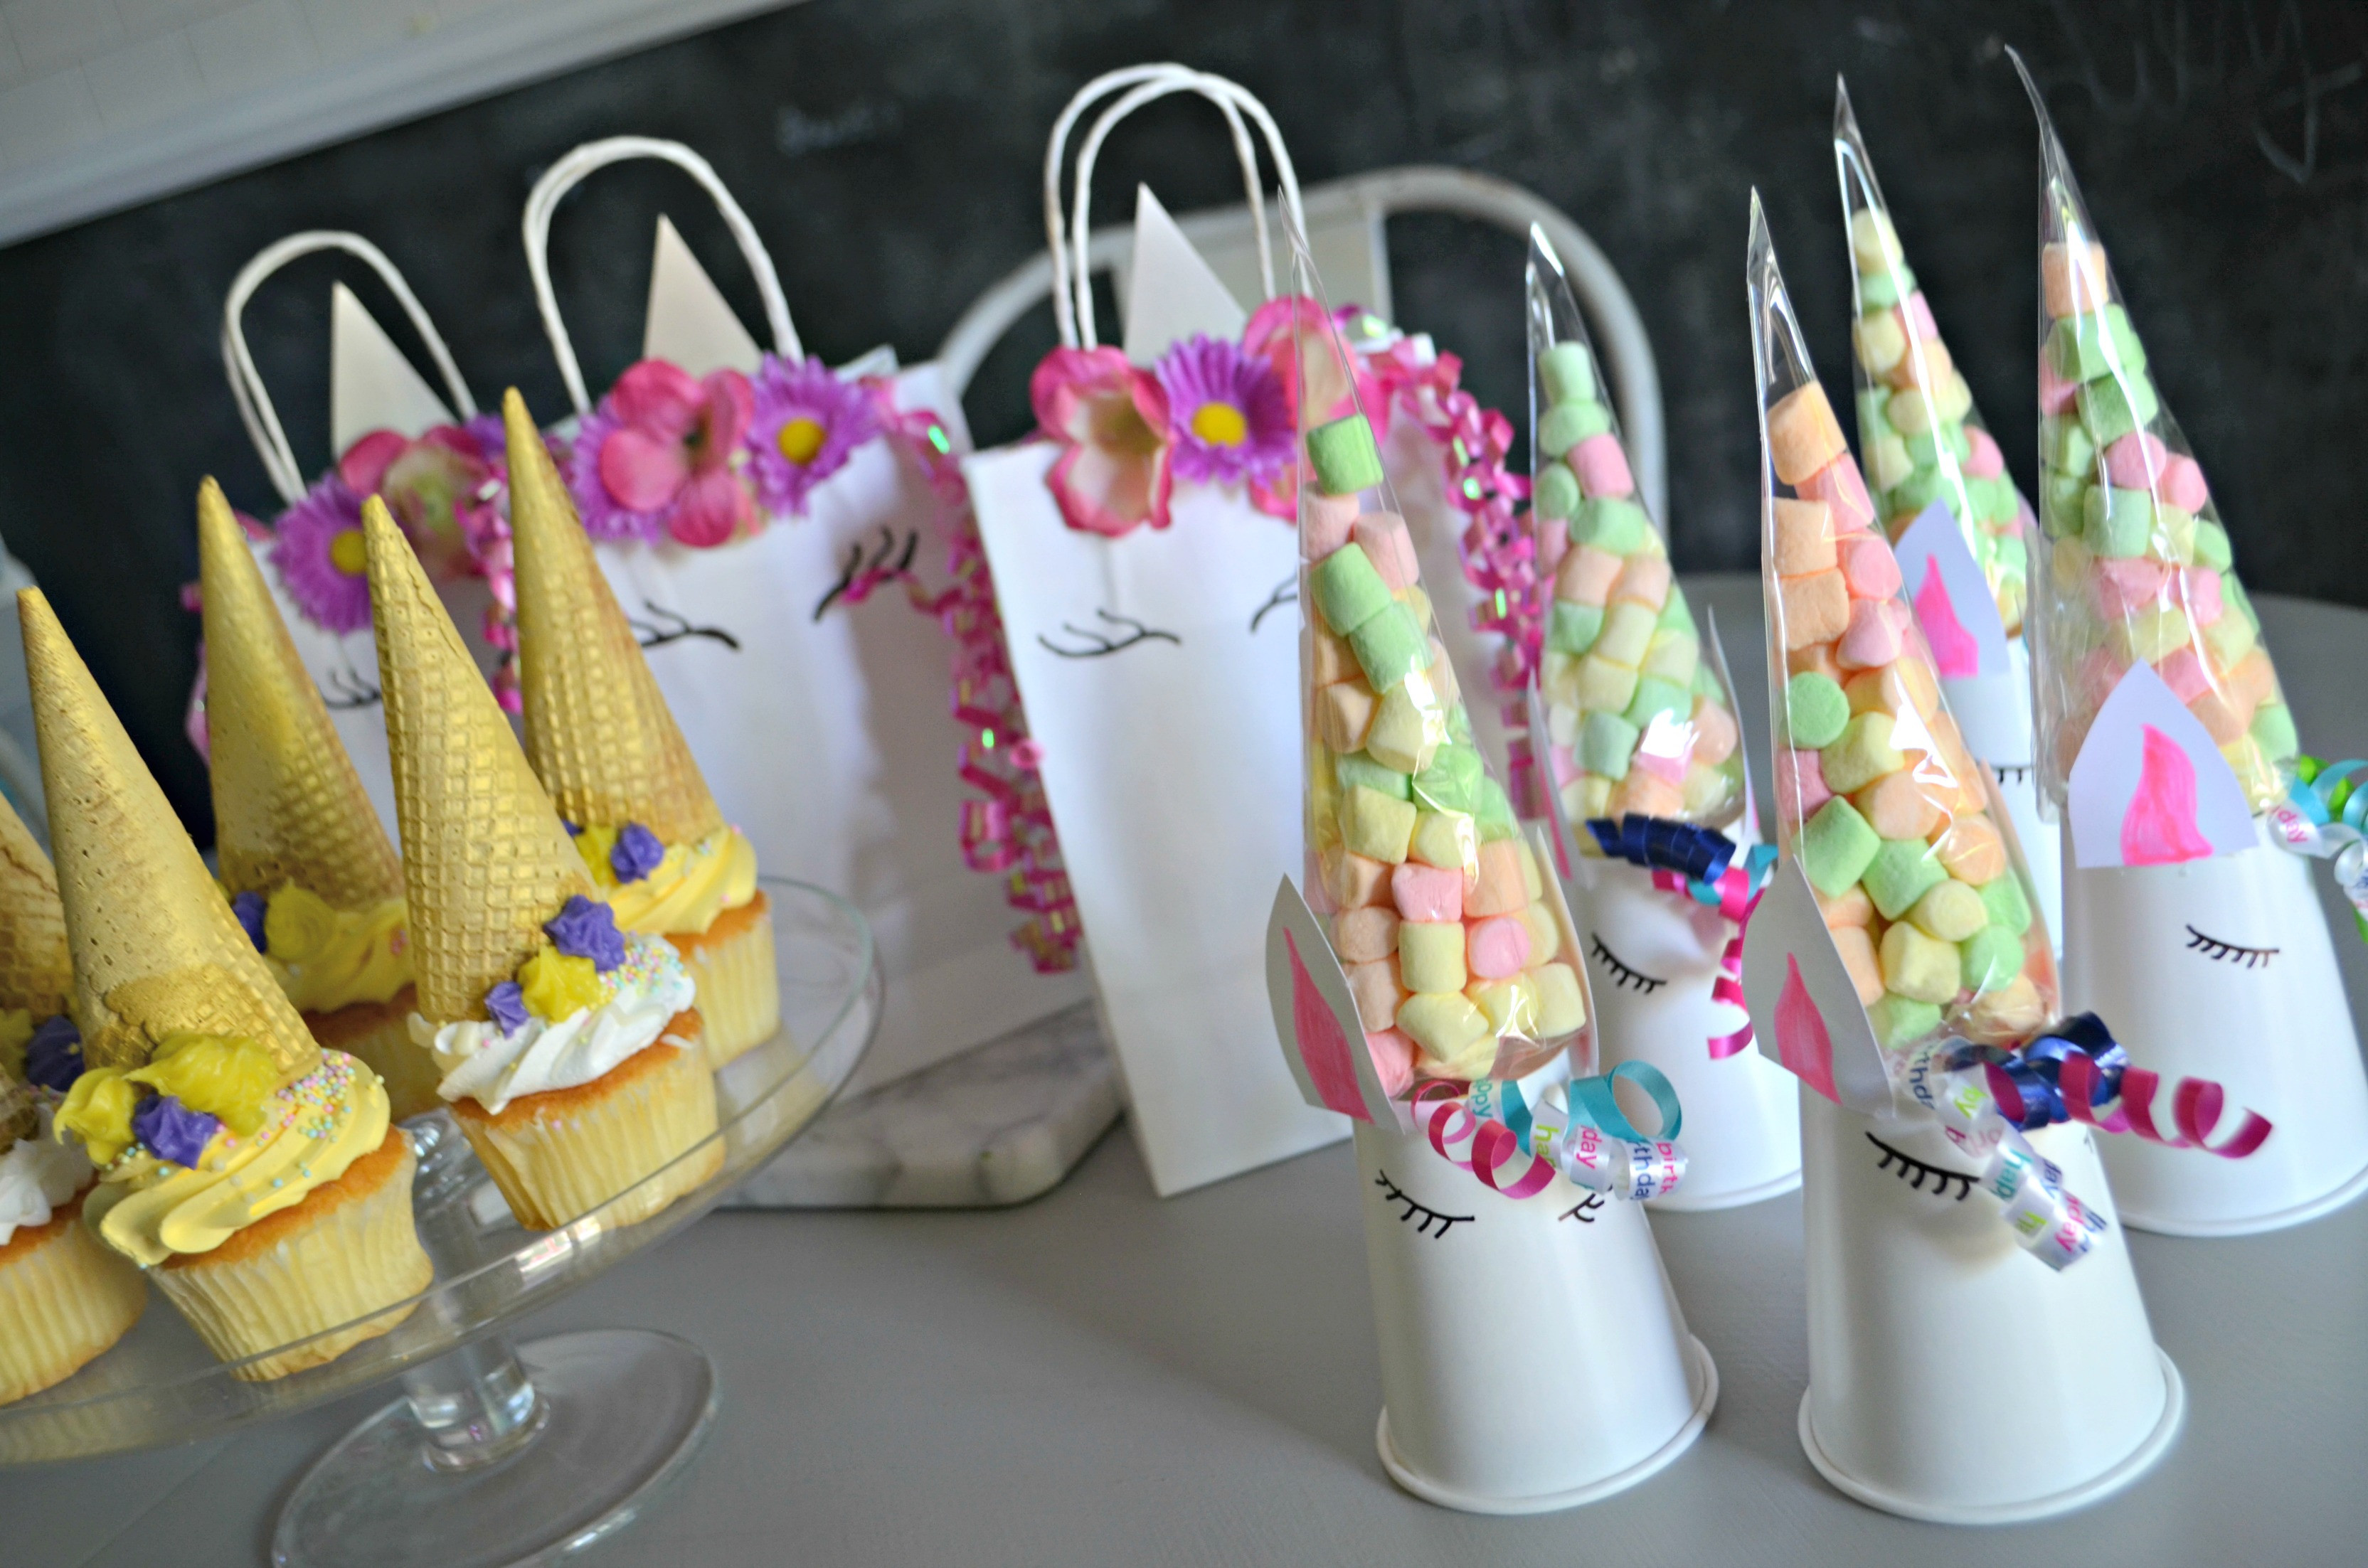 Diy Unicorn Birthday Party Ideas
 Make These 3 Frugal Cute and Easy DIY Unicorn Birthday